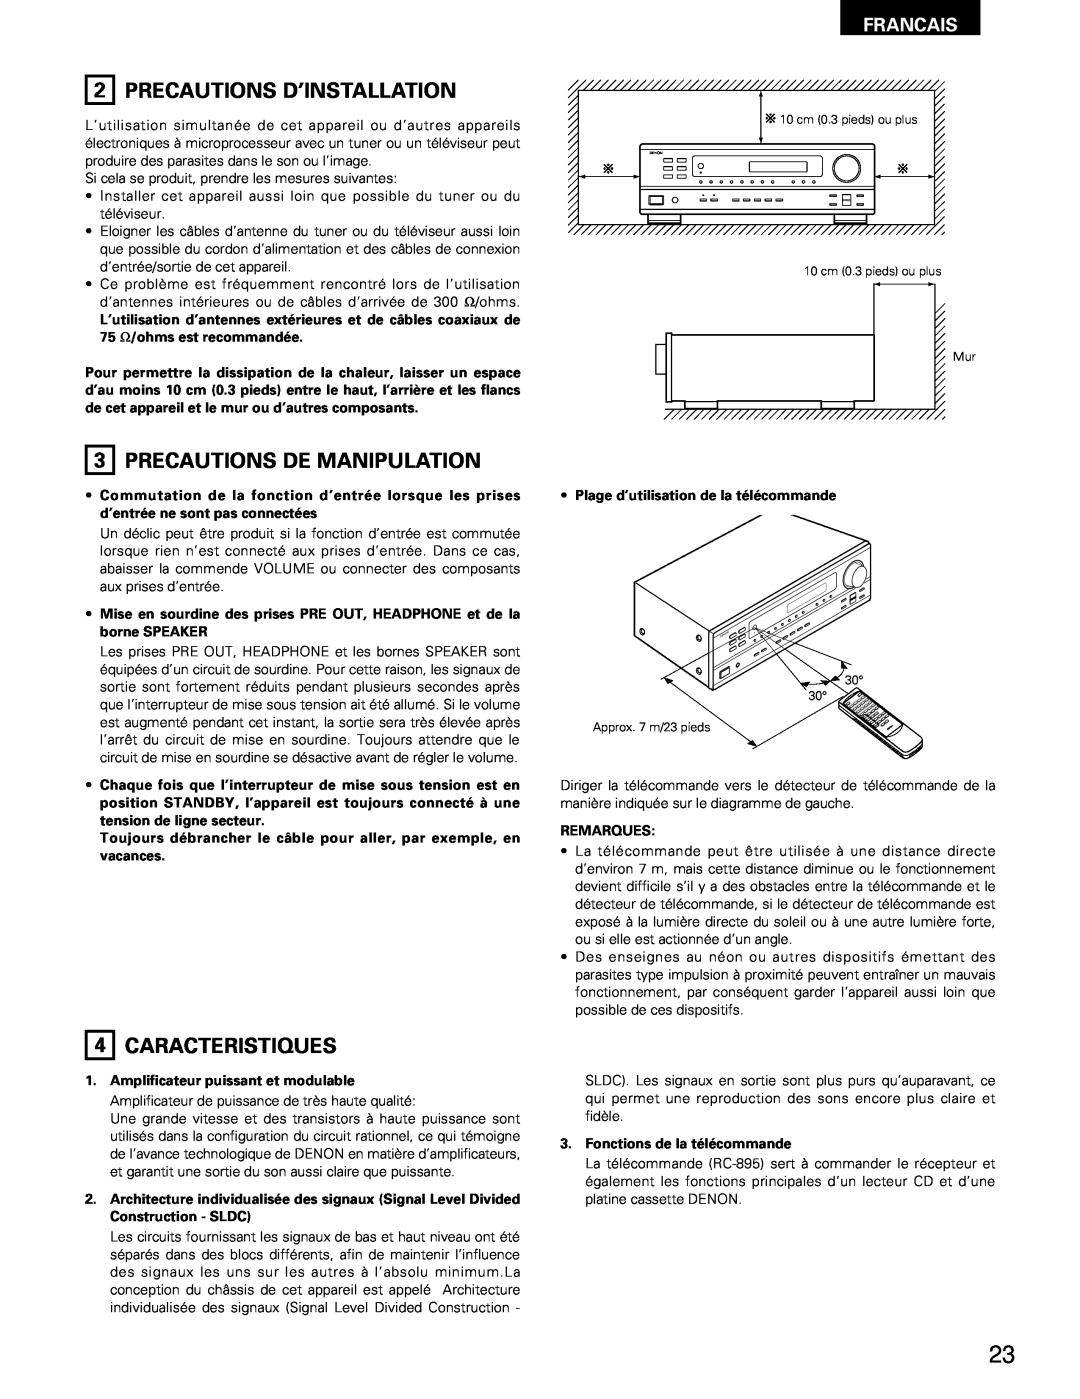 Denon DRA-295 manual Precautions D’Installation, 3PRECAUTIONS DE MANIPULATION, 4CARACTERISTIQUES, Francais 